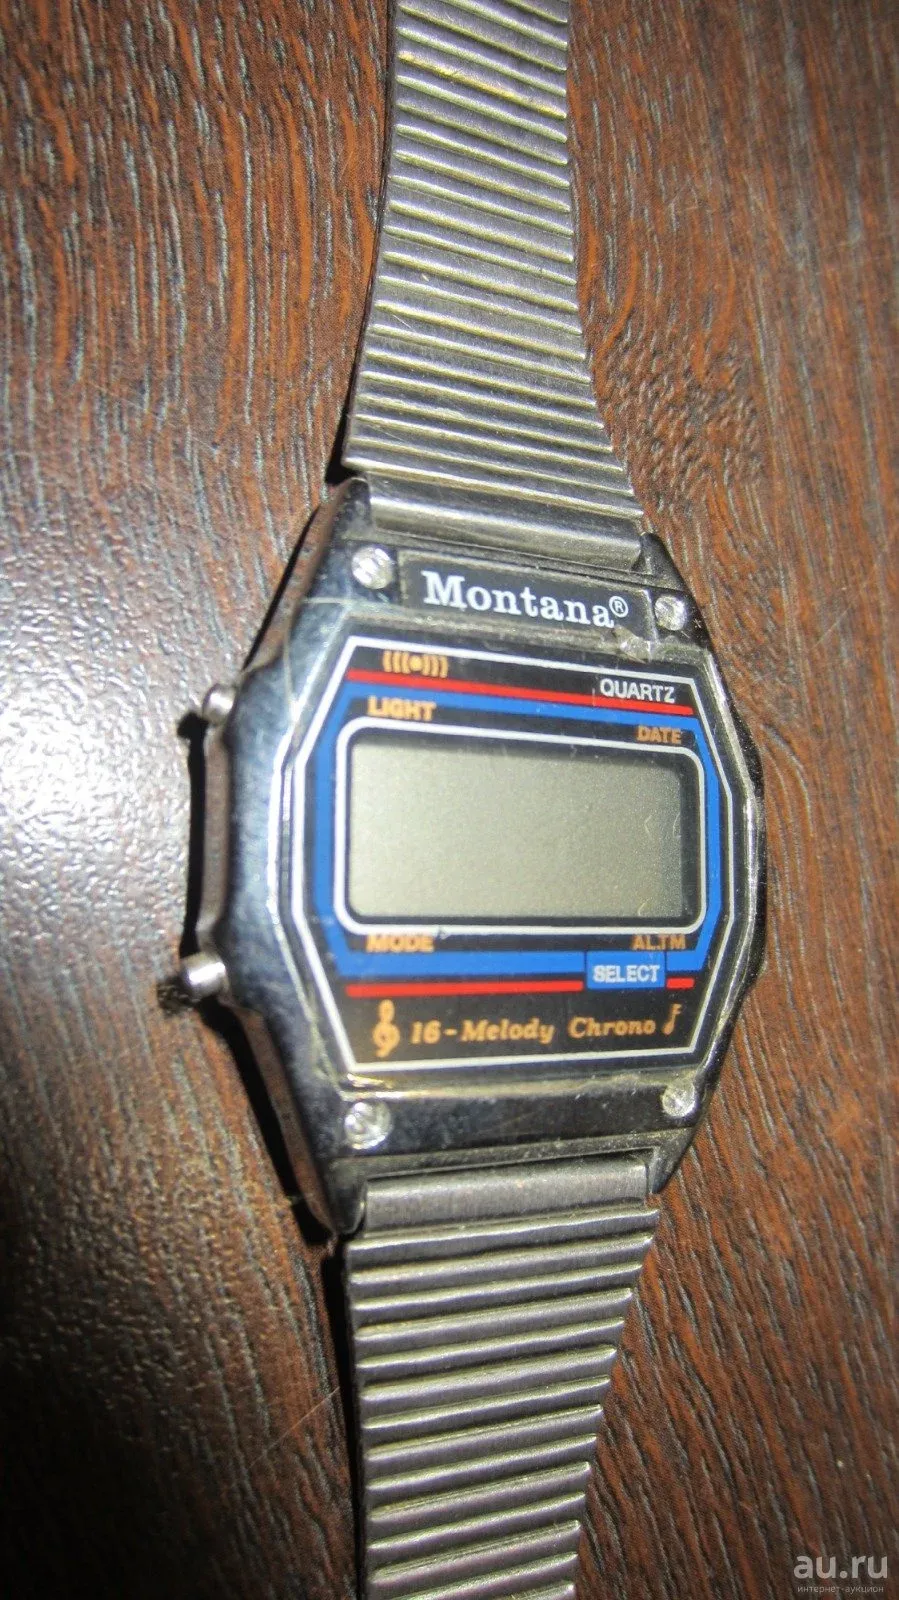 Часы монтана 90 х оригинал. Электронные часы 90 Монтана. Часы Монтана 90-х. Часы Монтана 90-х производитель.